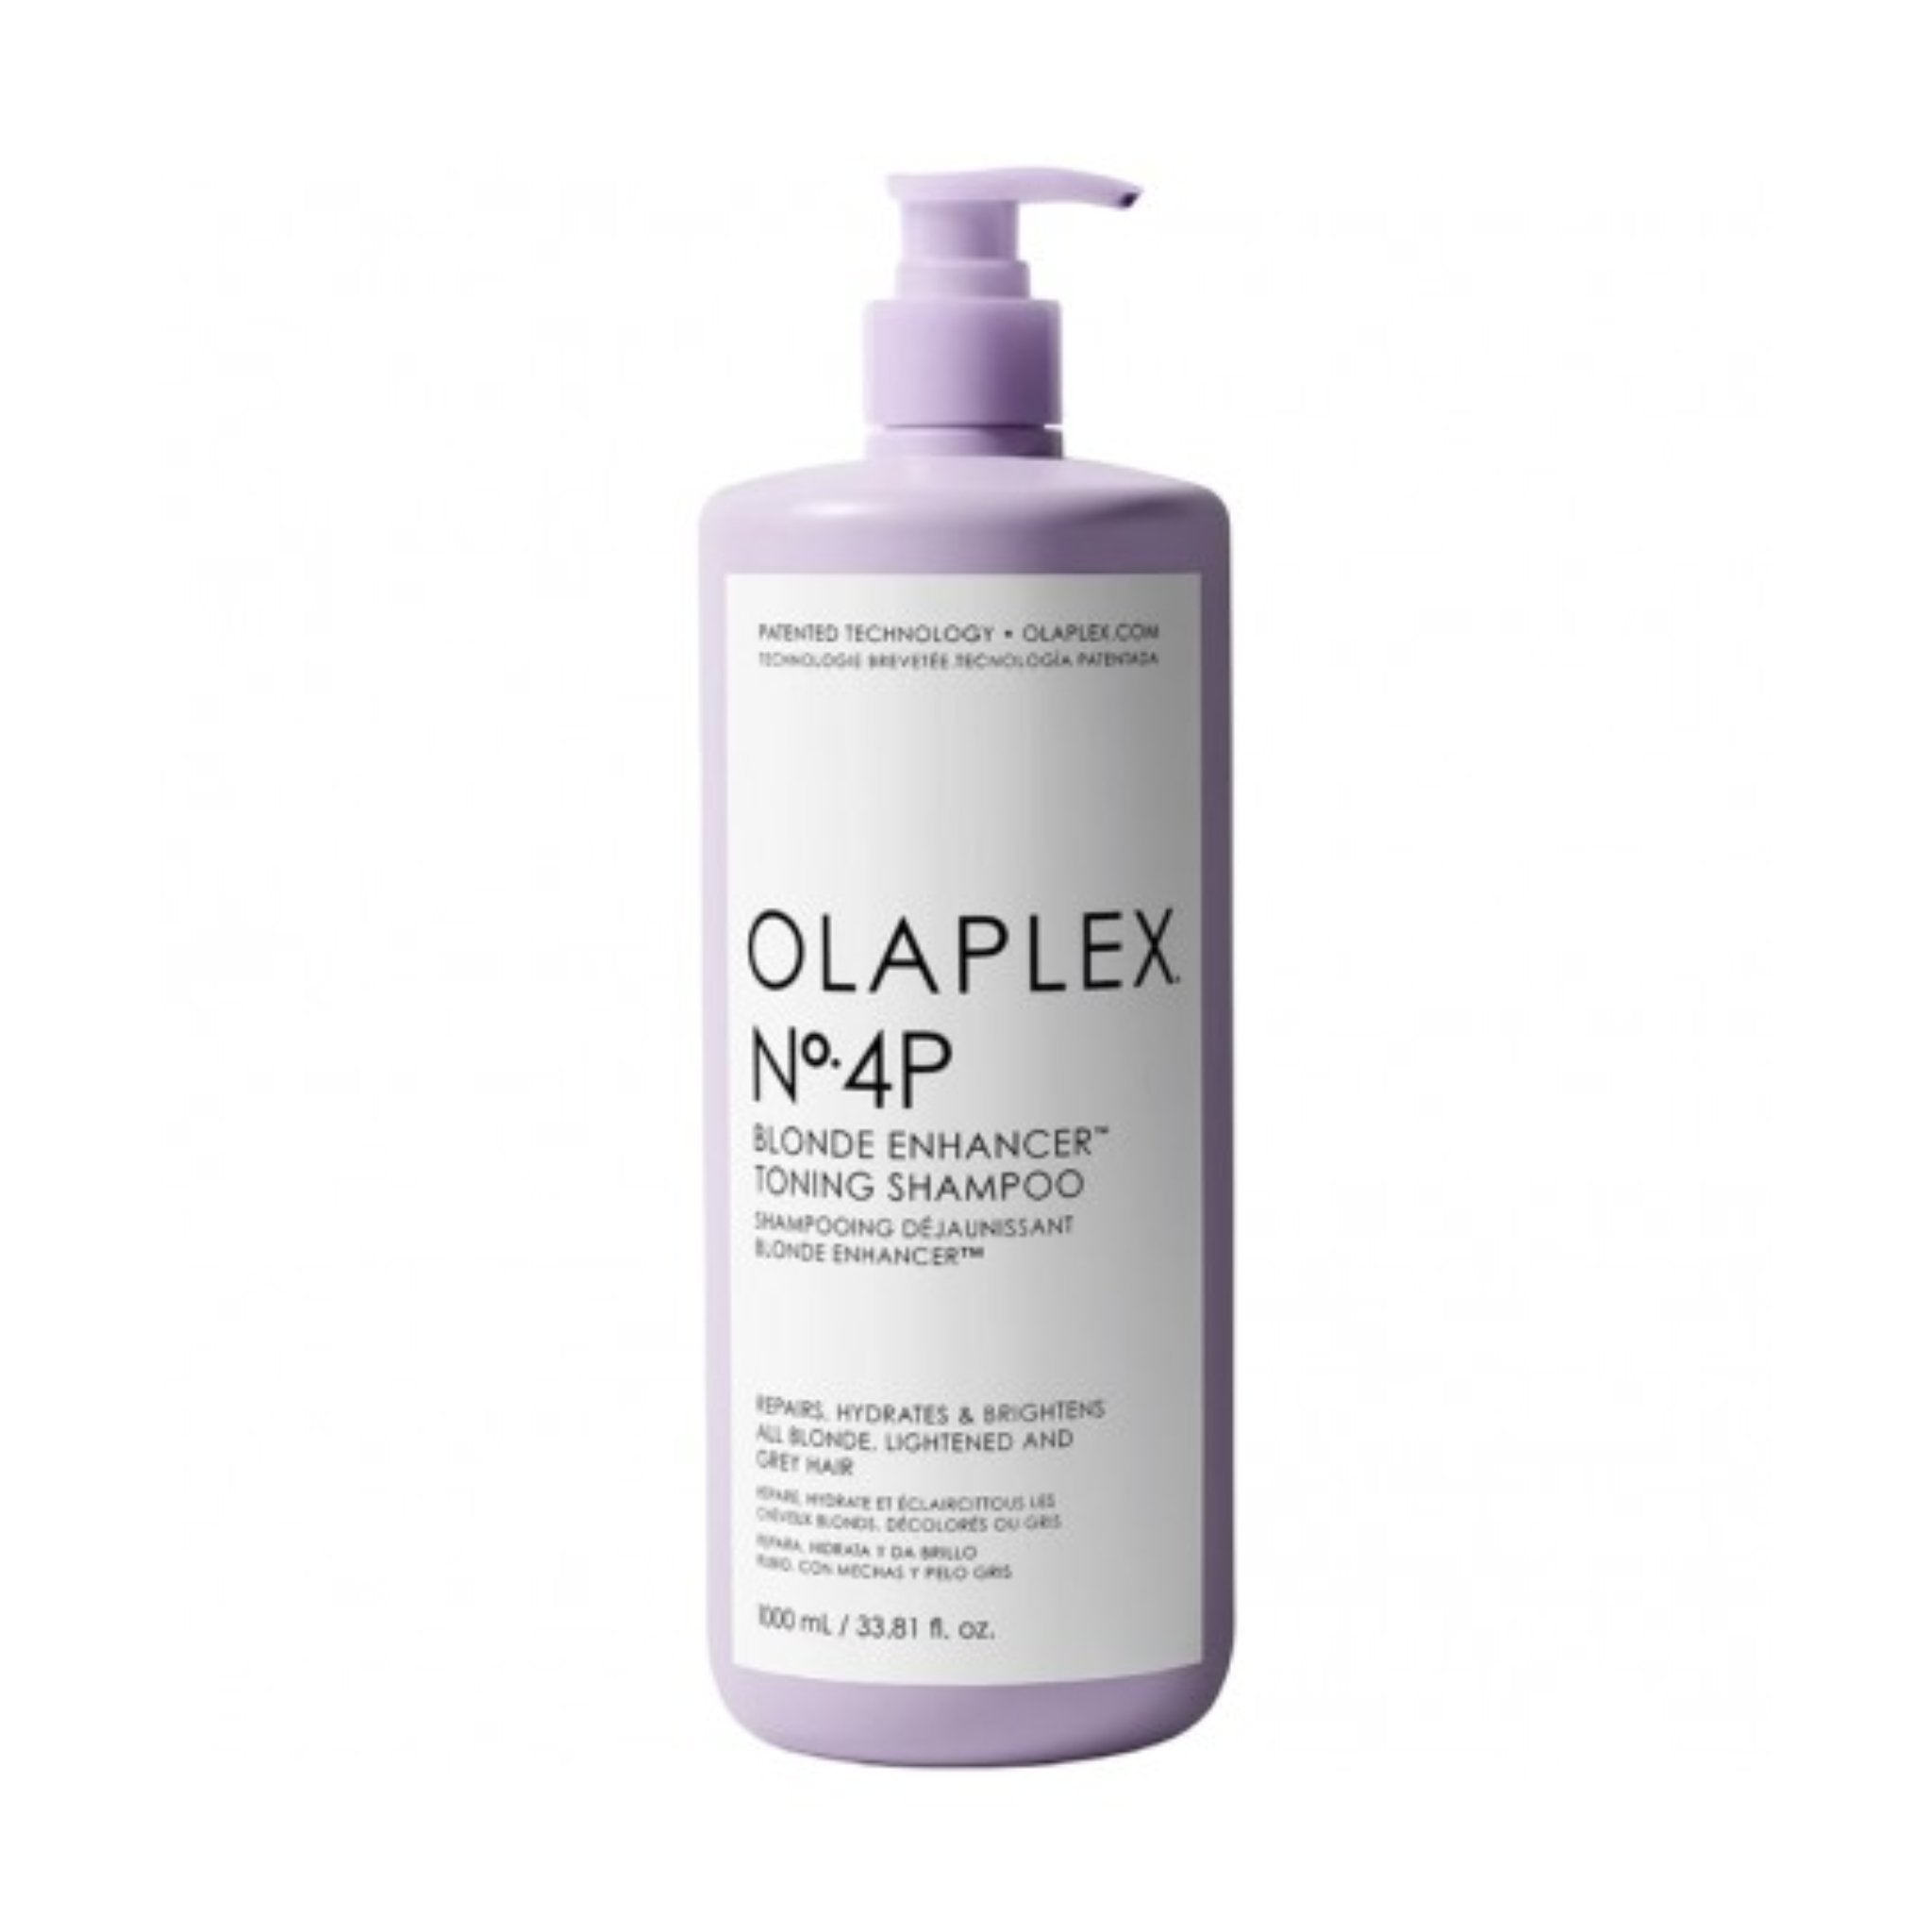 Olaplex. Shampoing Rehausseur De Blond No. 4P - 1000 ml - Concept C. Shop